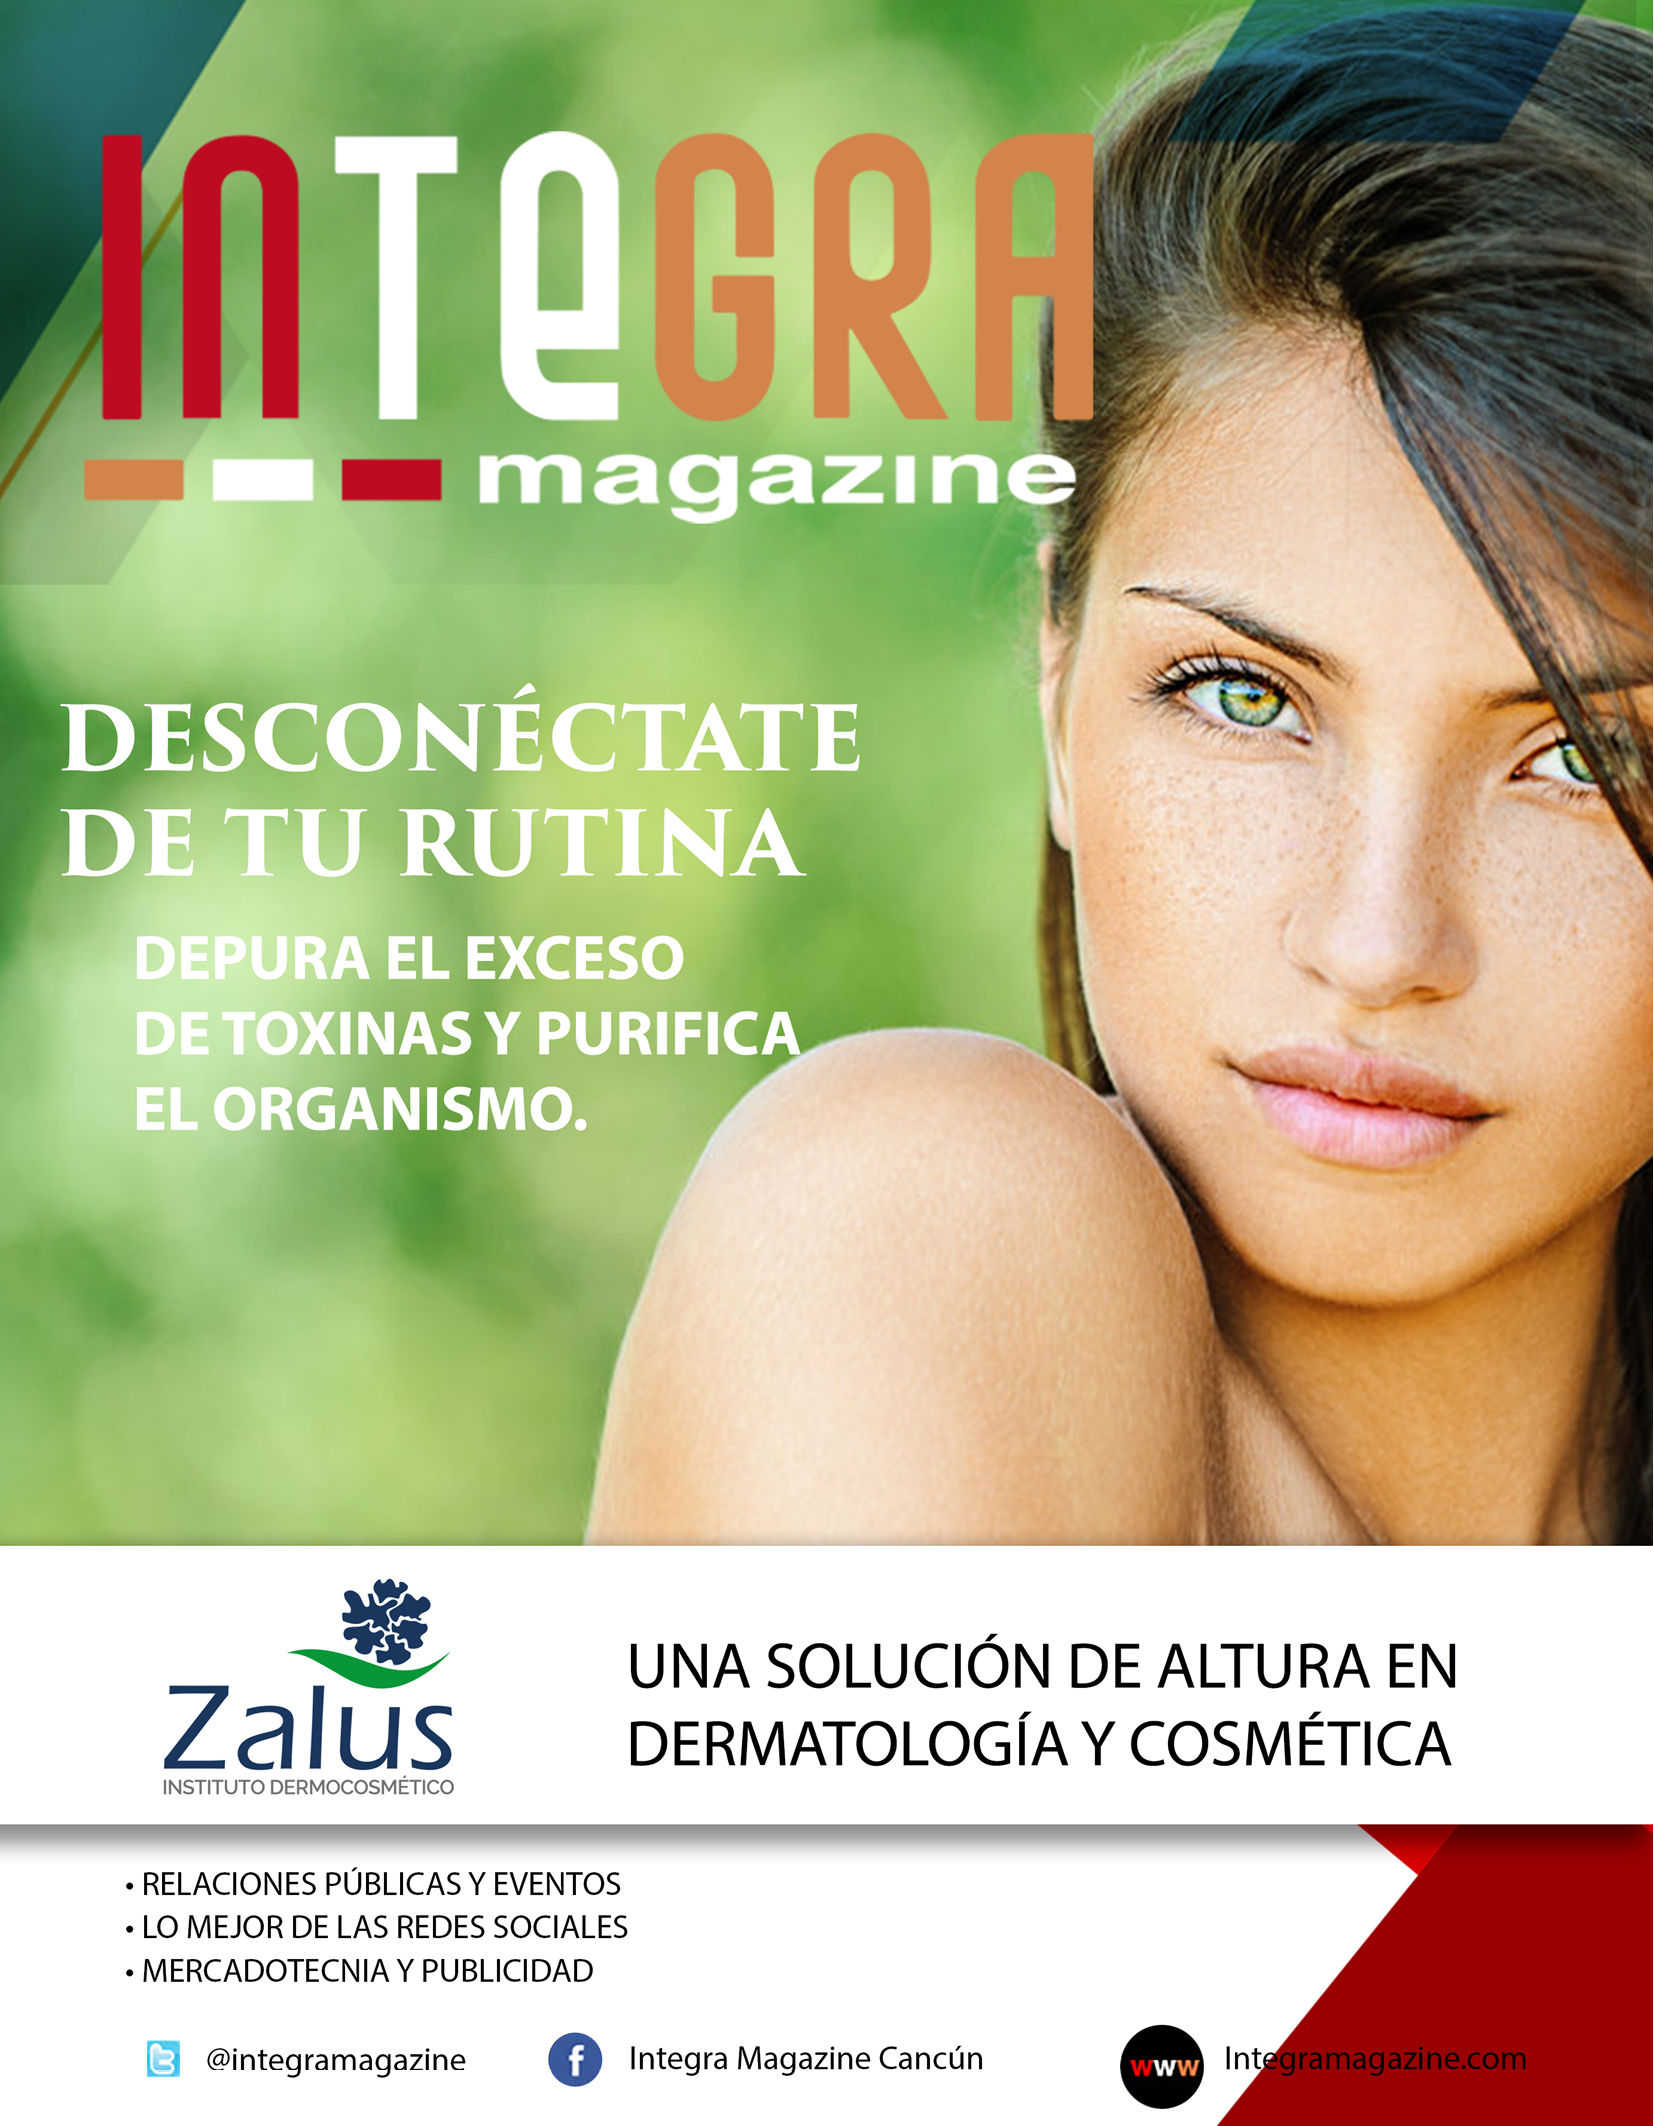 Zalus – Una solución de altura en dermatología y cosmética